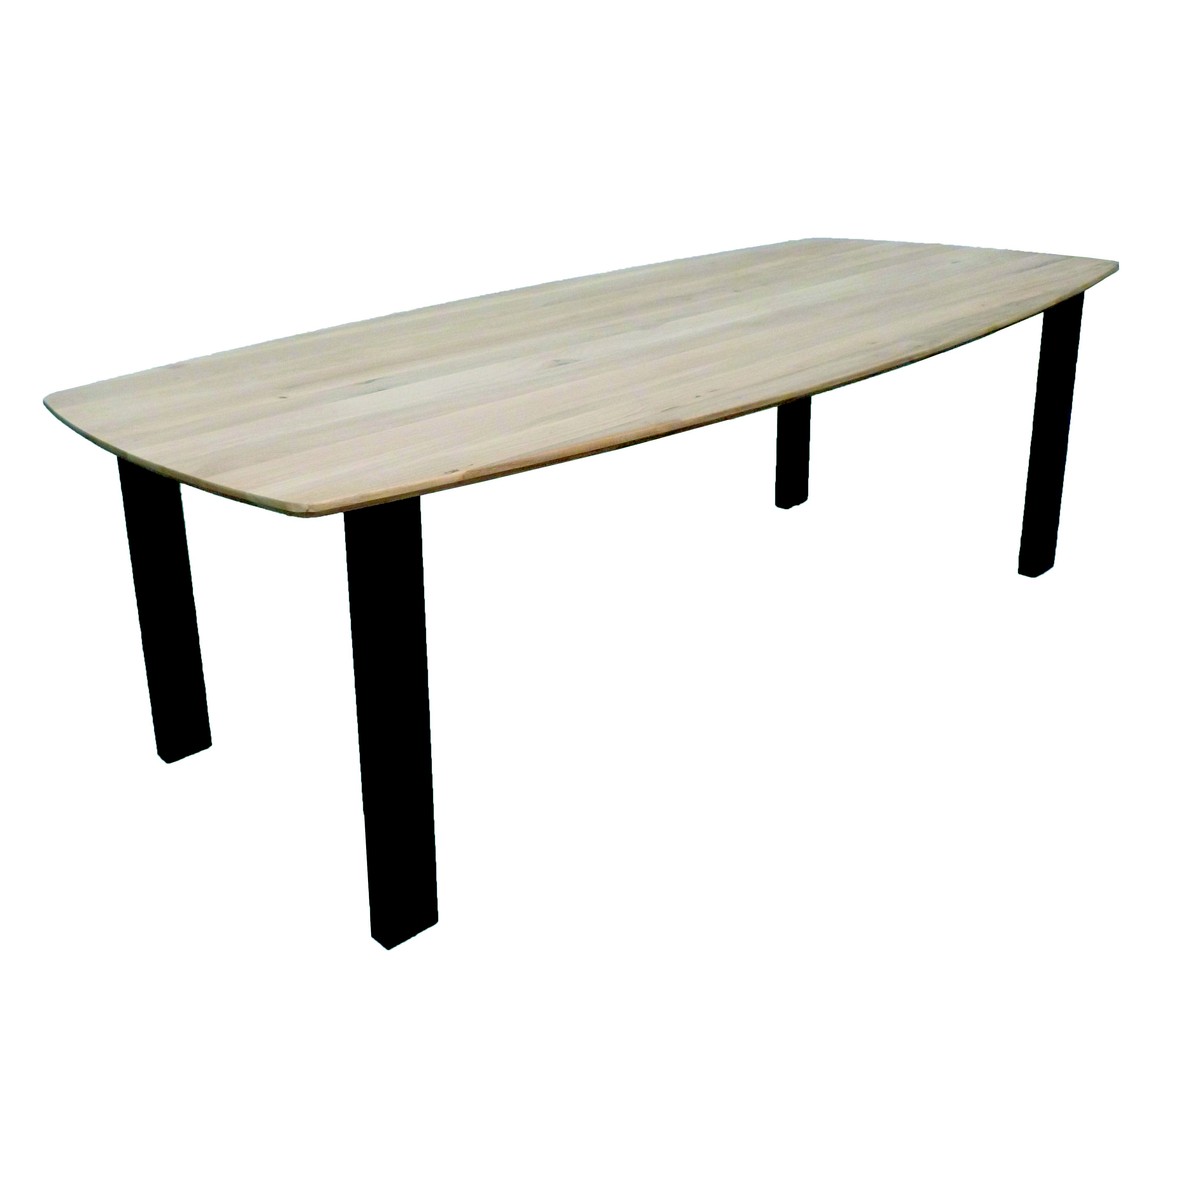   Table Zola Droit ovale  200x110x77cm